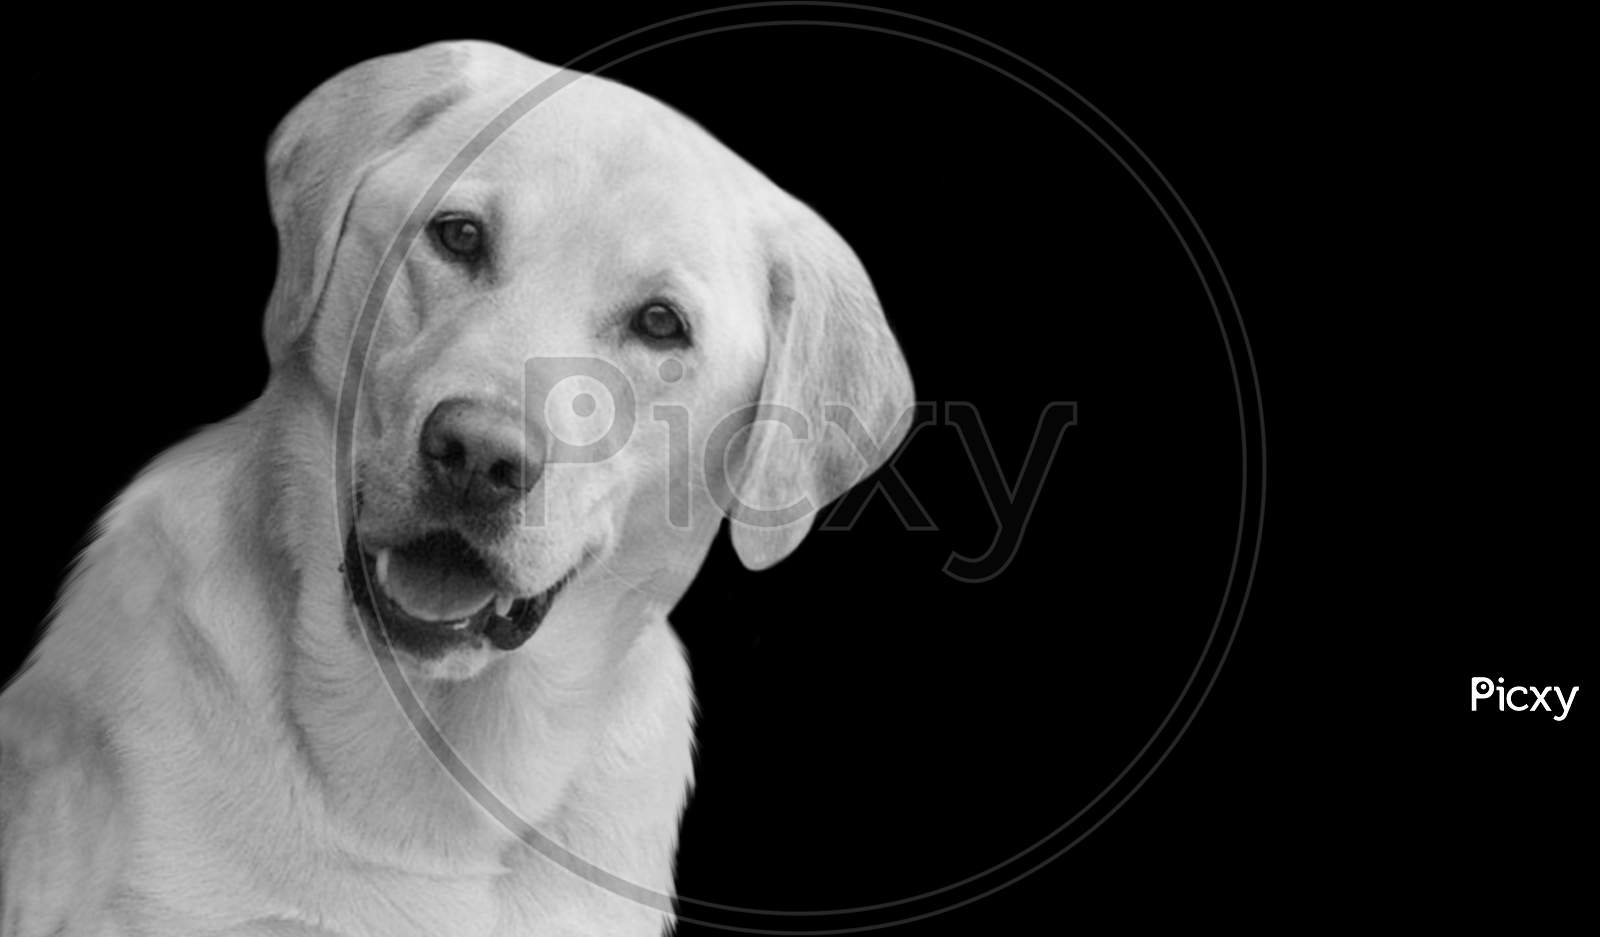 Funny Labrador Retriever Dog Smiling On The Black Background